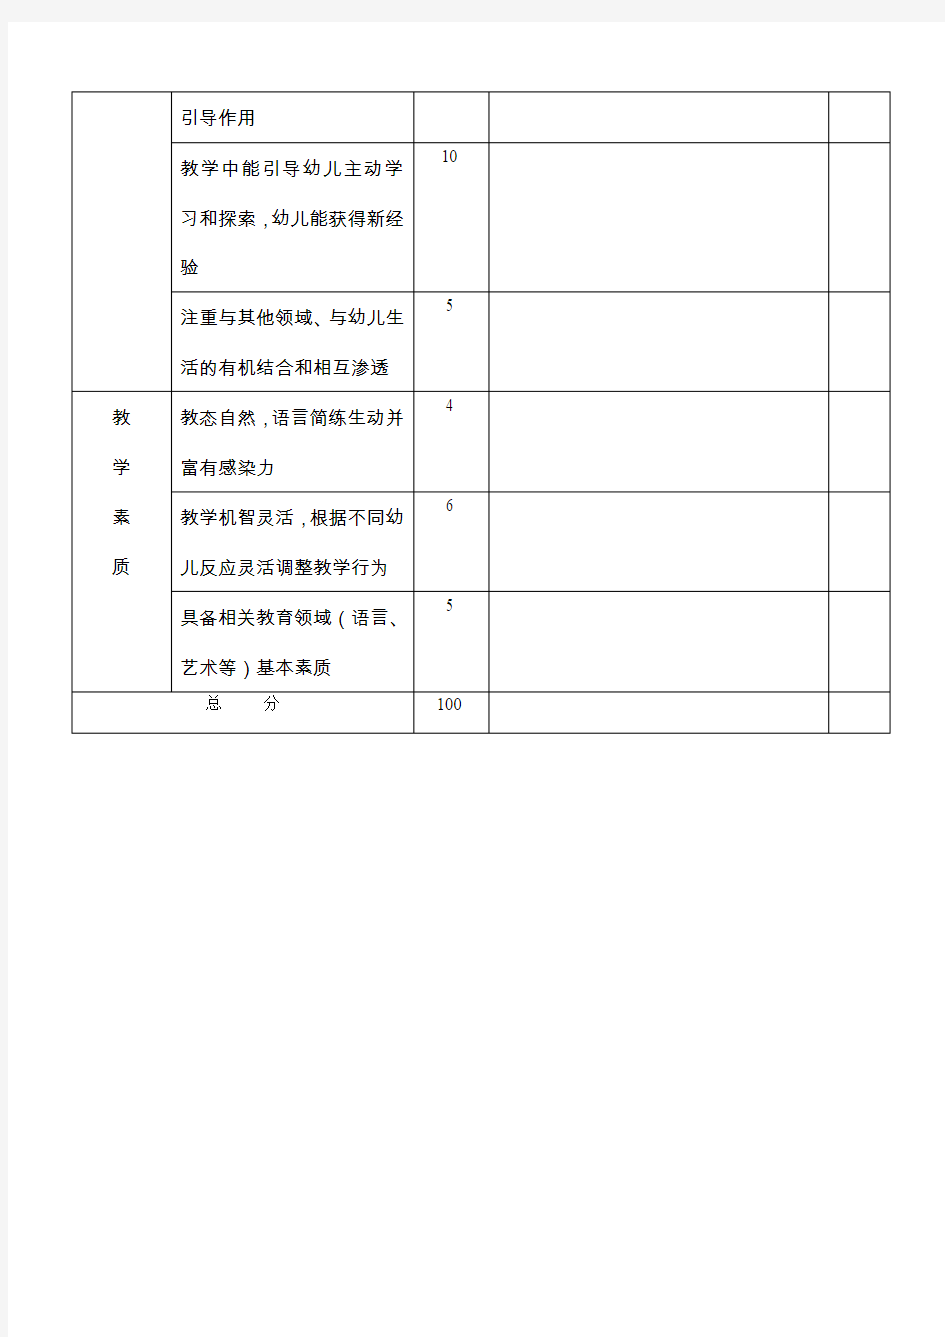 何嘉仁国际幼儿园教师公开课评分标准